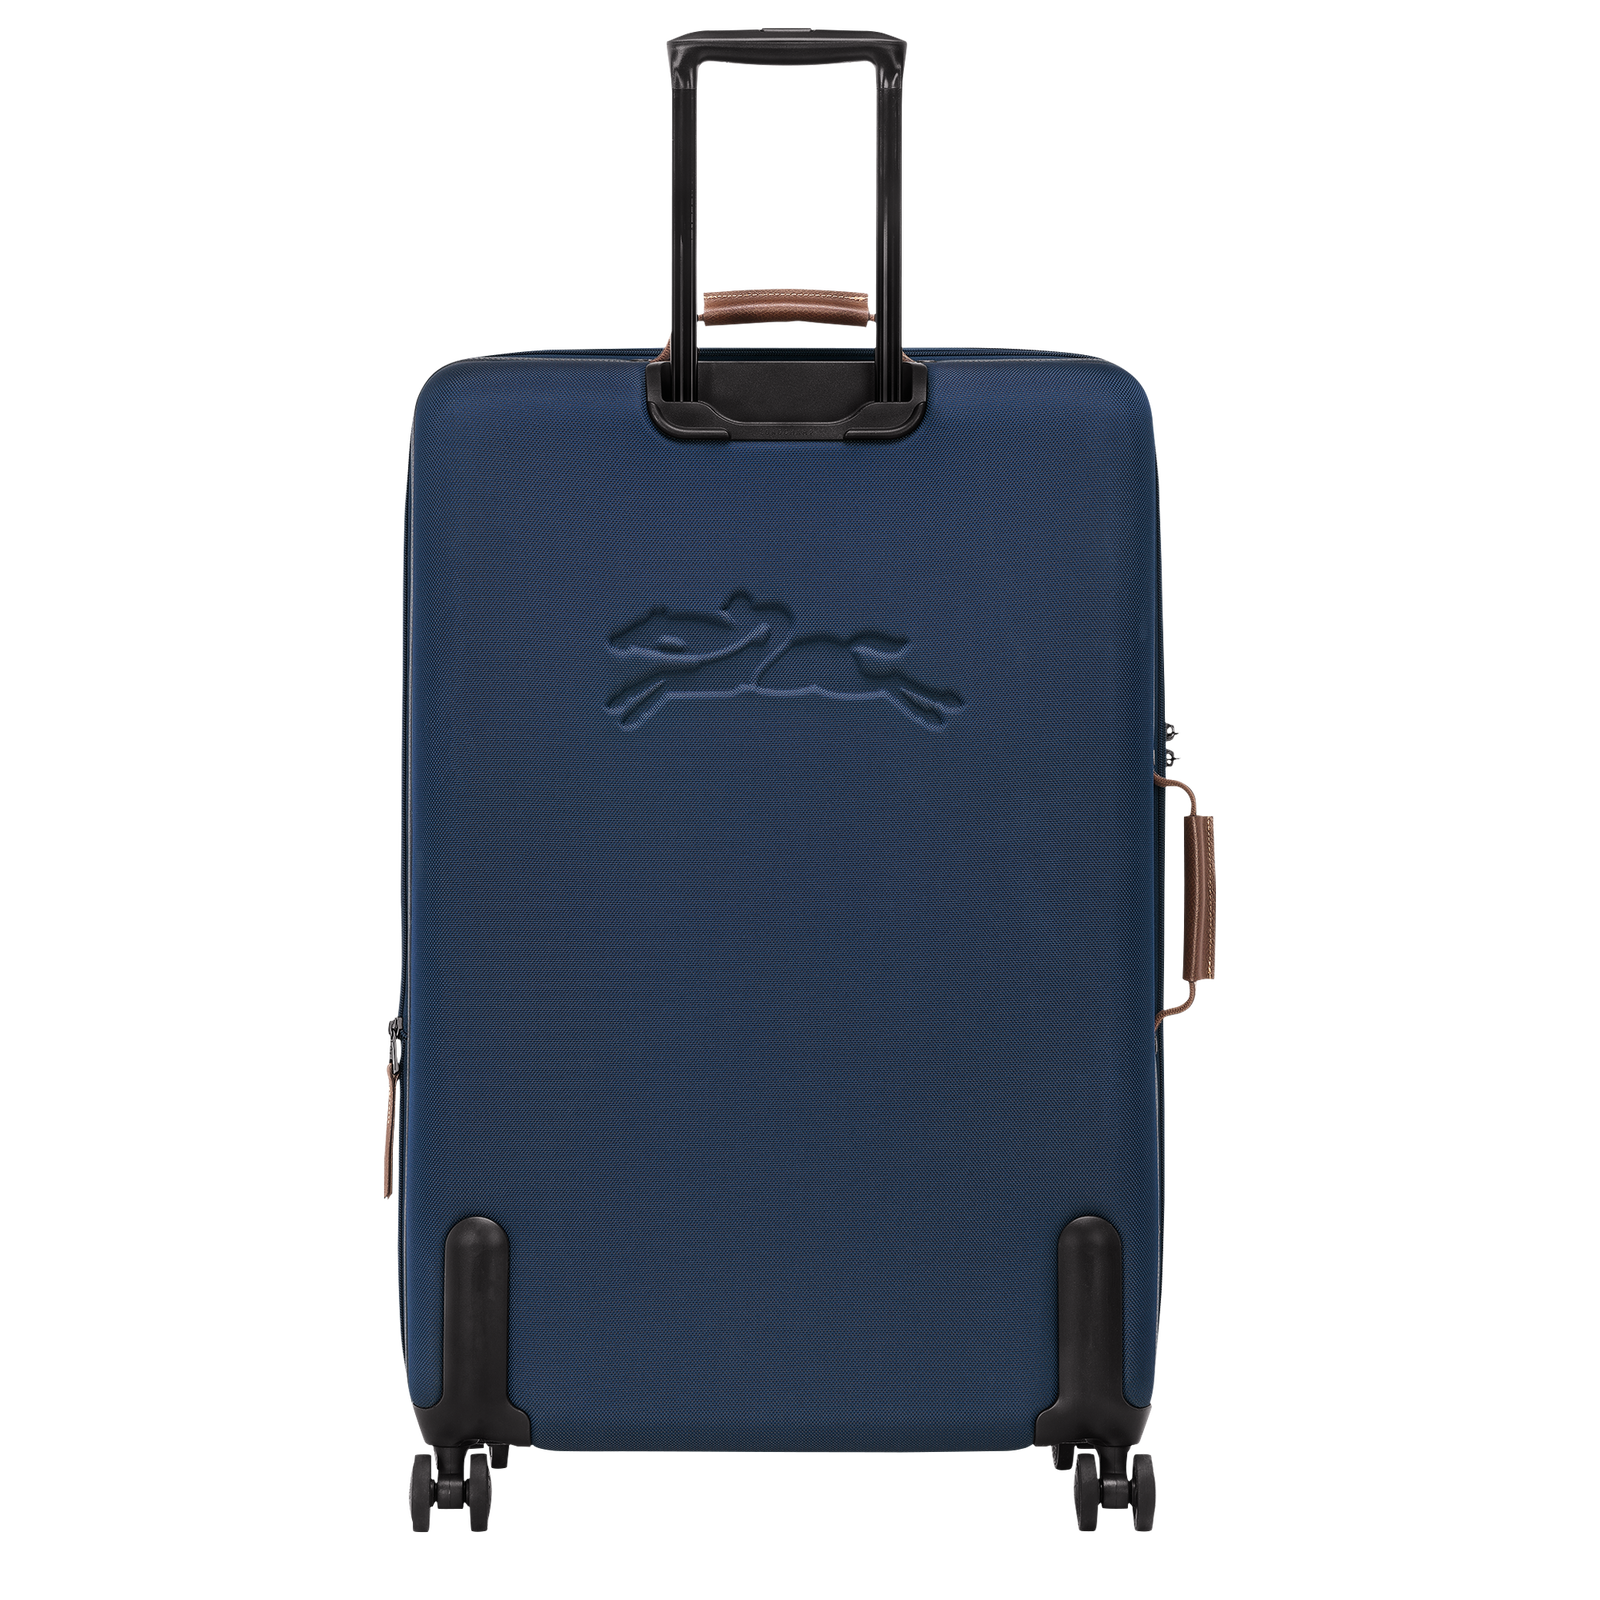 ボックスフォード スーツケース XL, ブルー